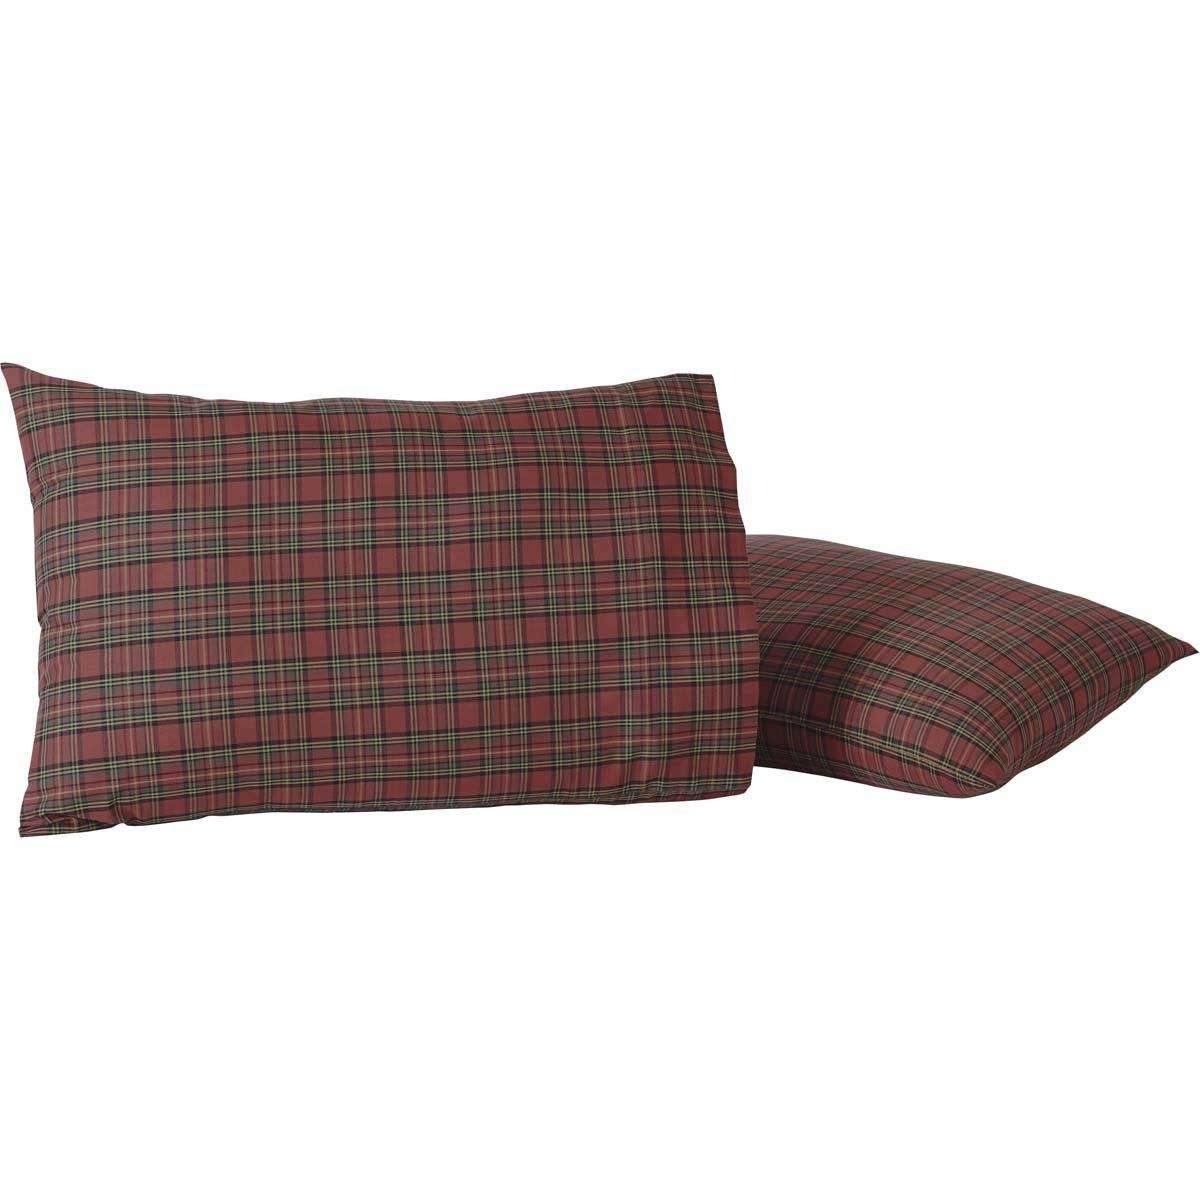 Tartan Red Plaid Standard Pillow Case Set of 2 21x30 VHC Brands - The Fox Decor